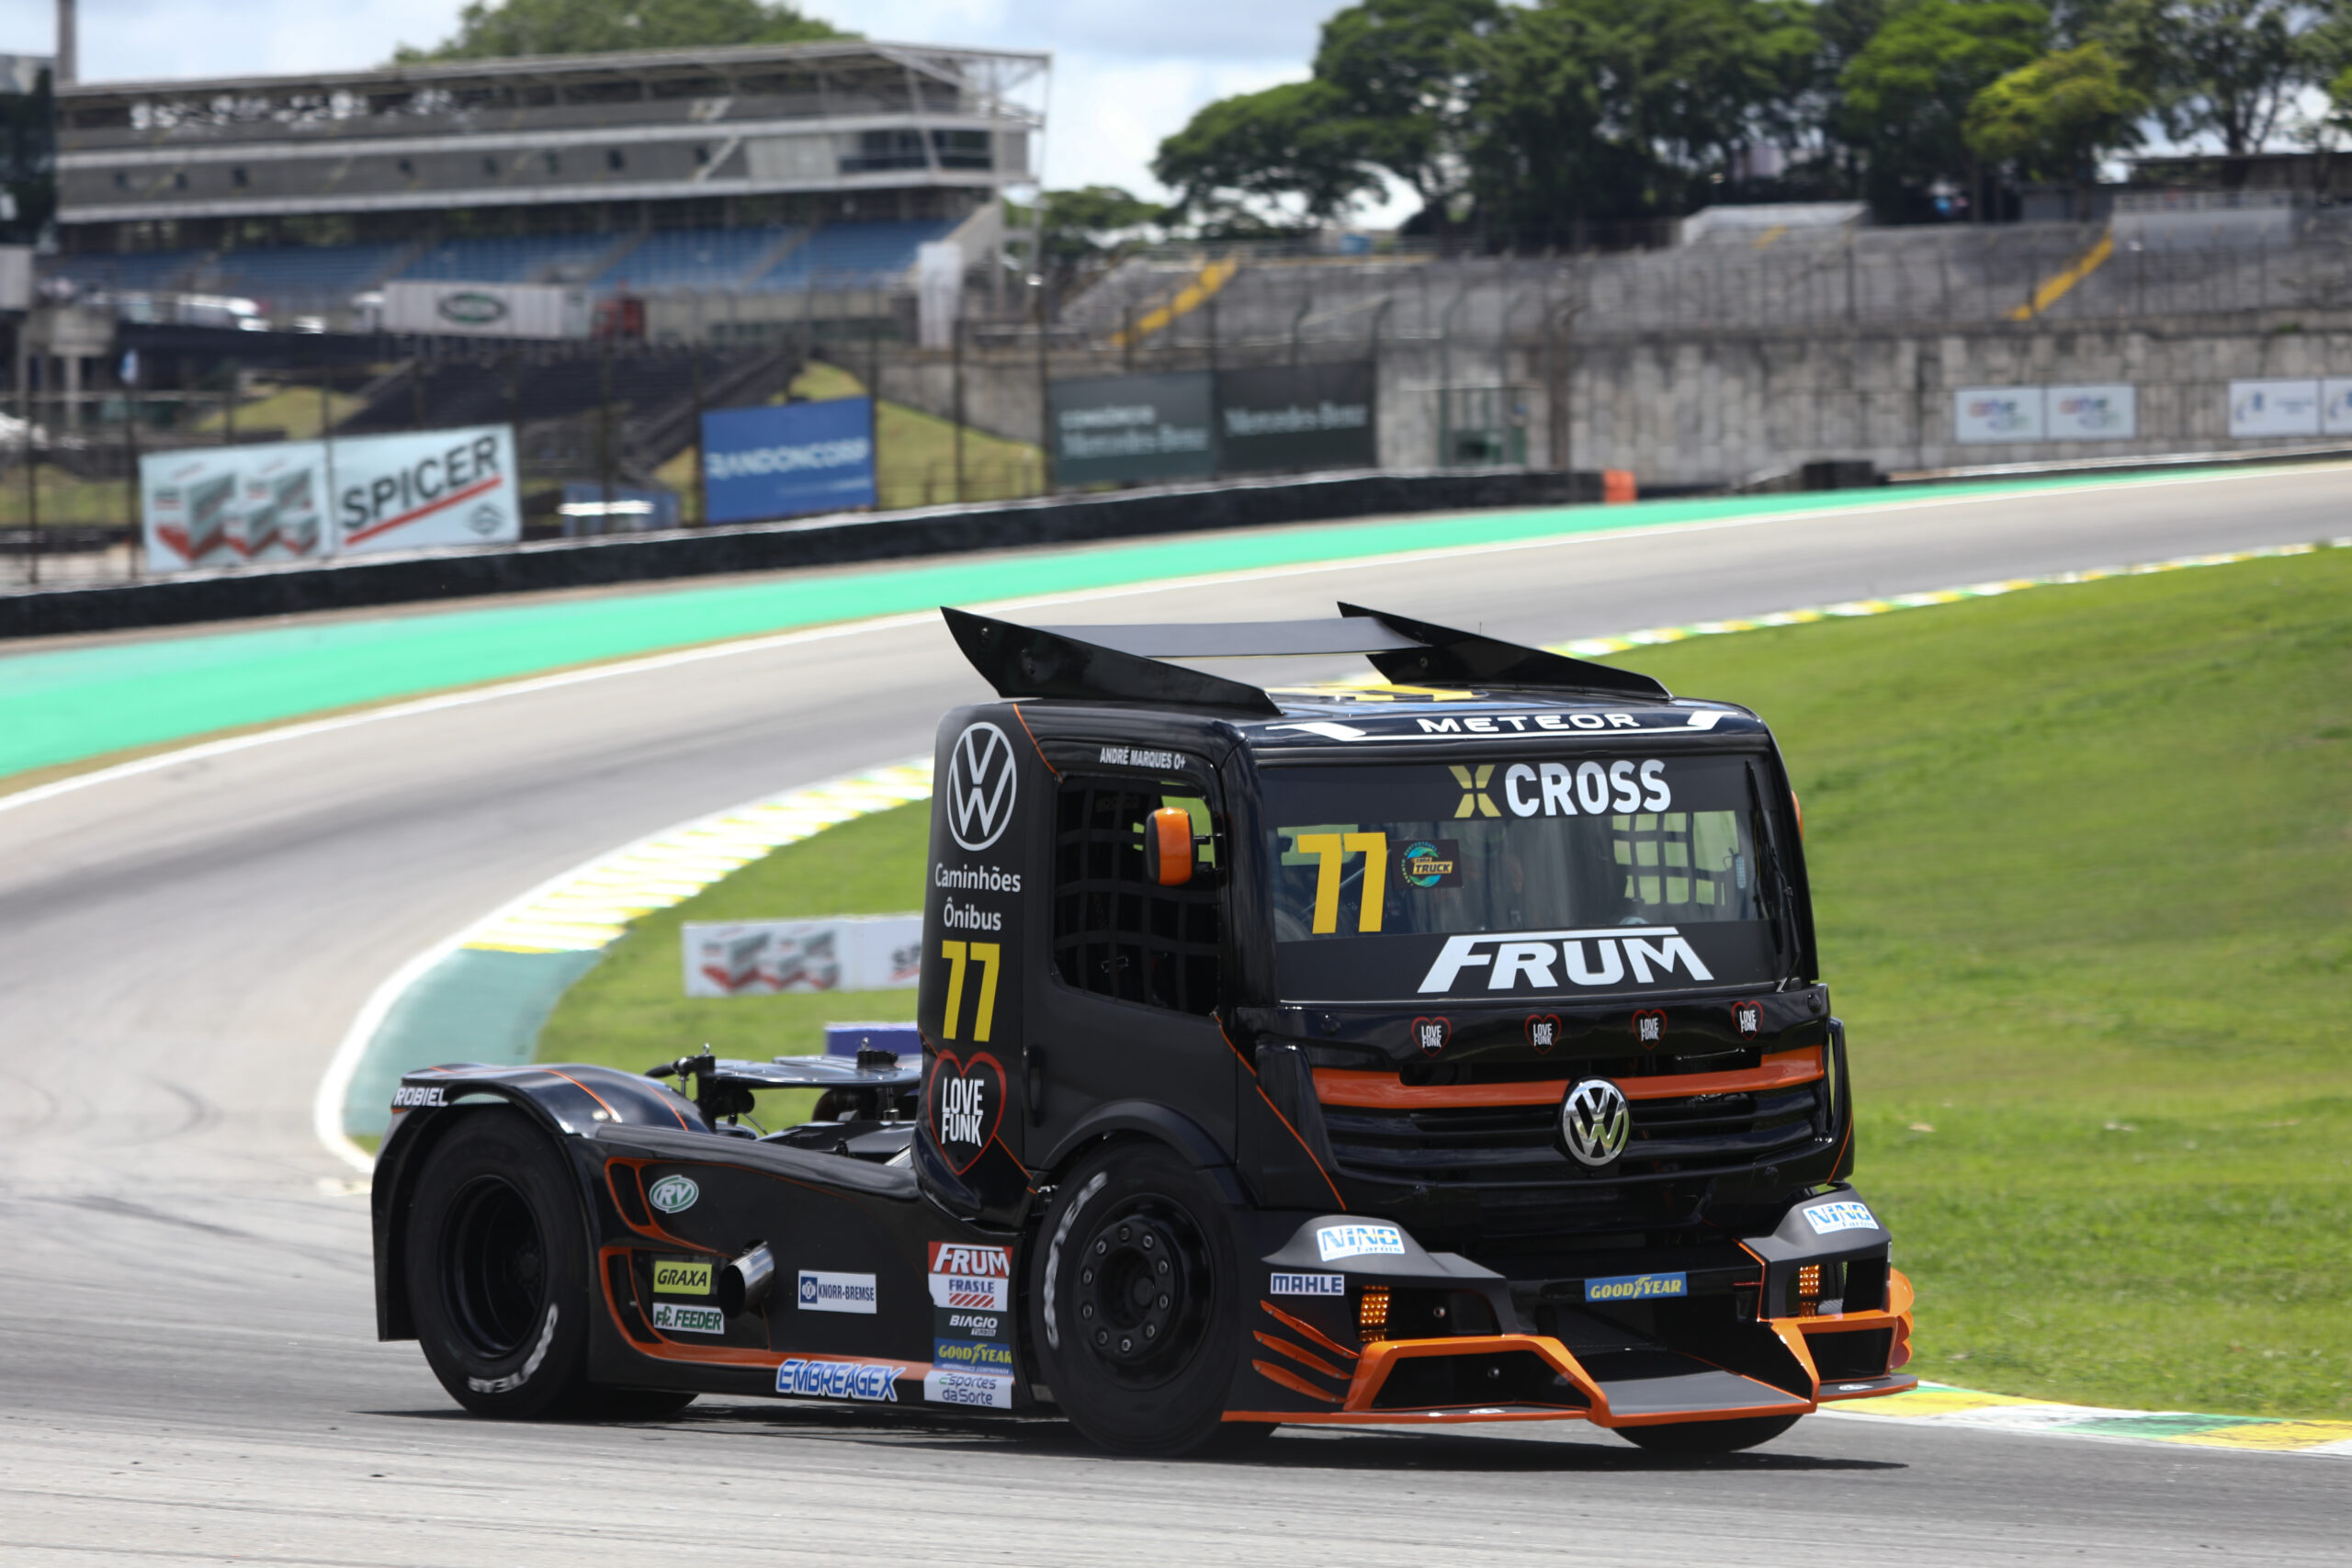 Copa Truck: Marques é pole em Interlagos. Giaffone larga à frente de Andrade